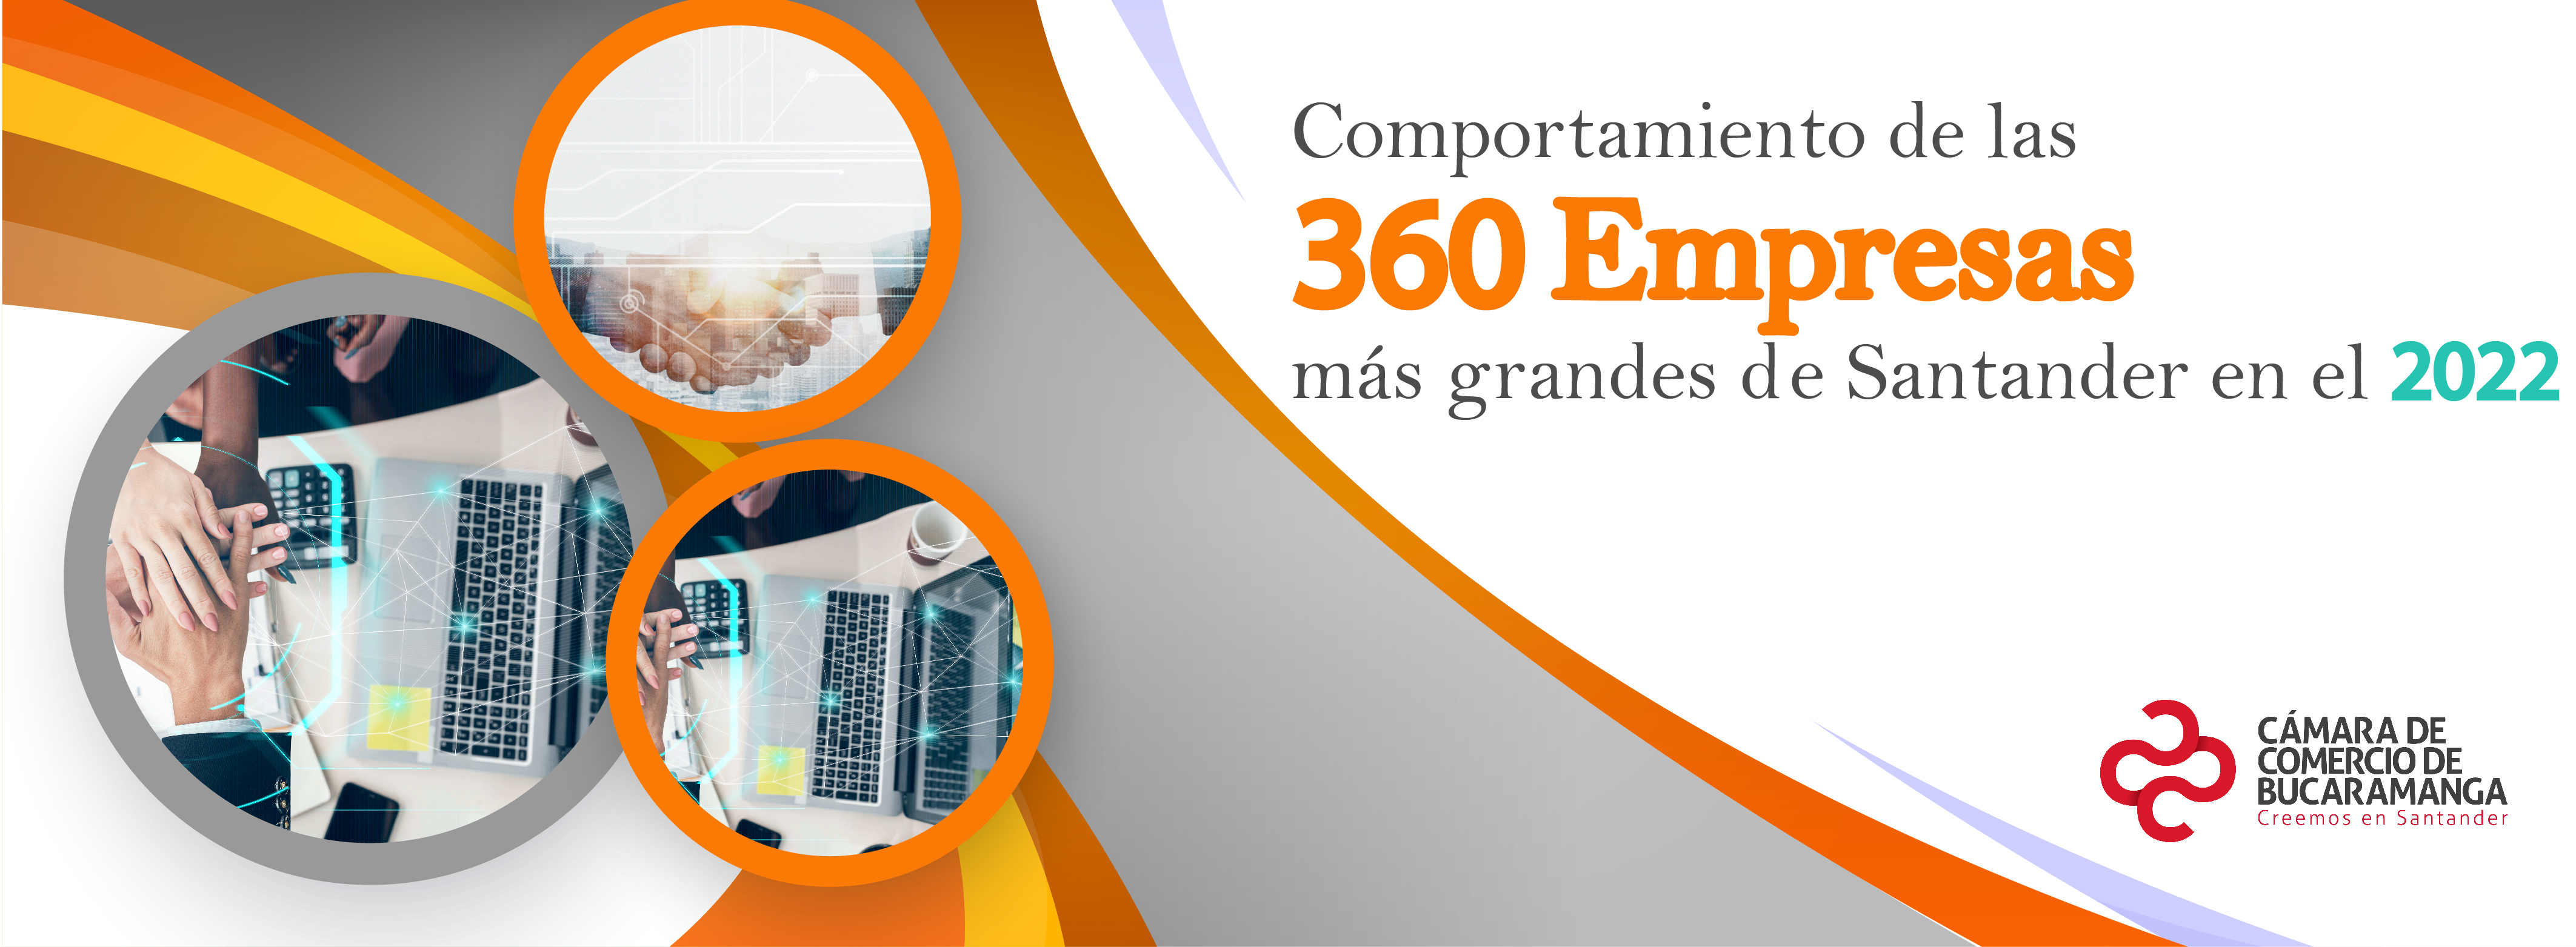 Comportamiento de las 360 empresas más grandes de Santander 2022